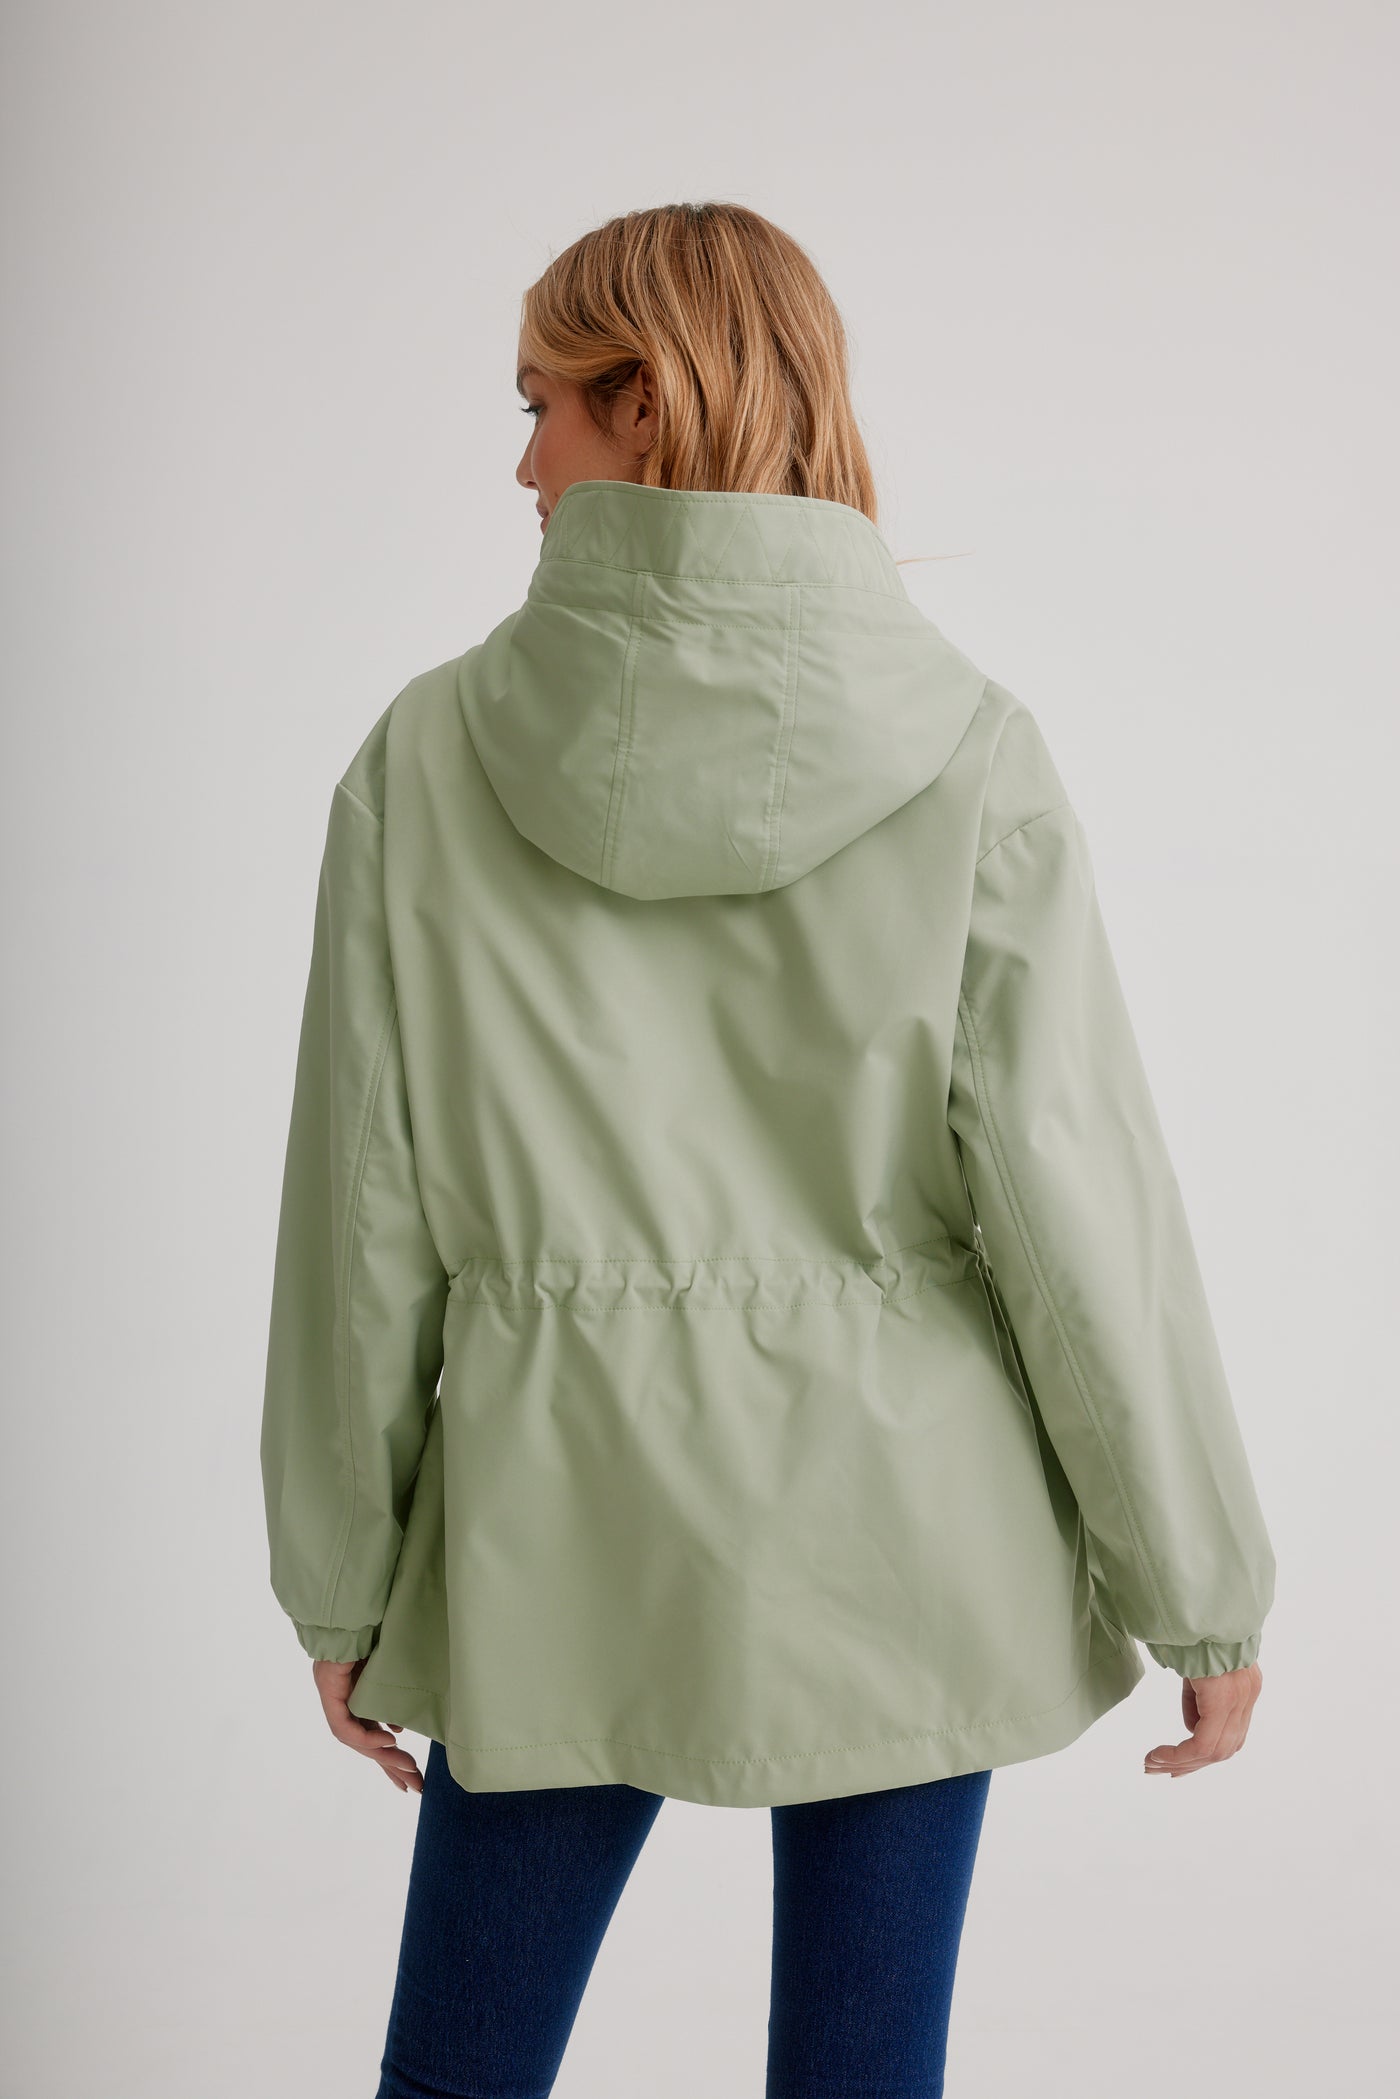 Nikki Jones Packable Anorak Raincoat W/ Contrast Trim 